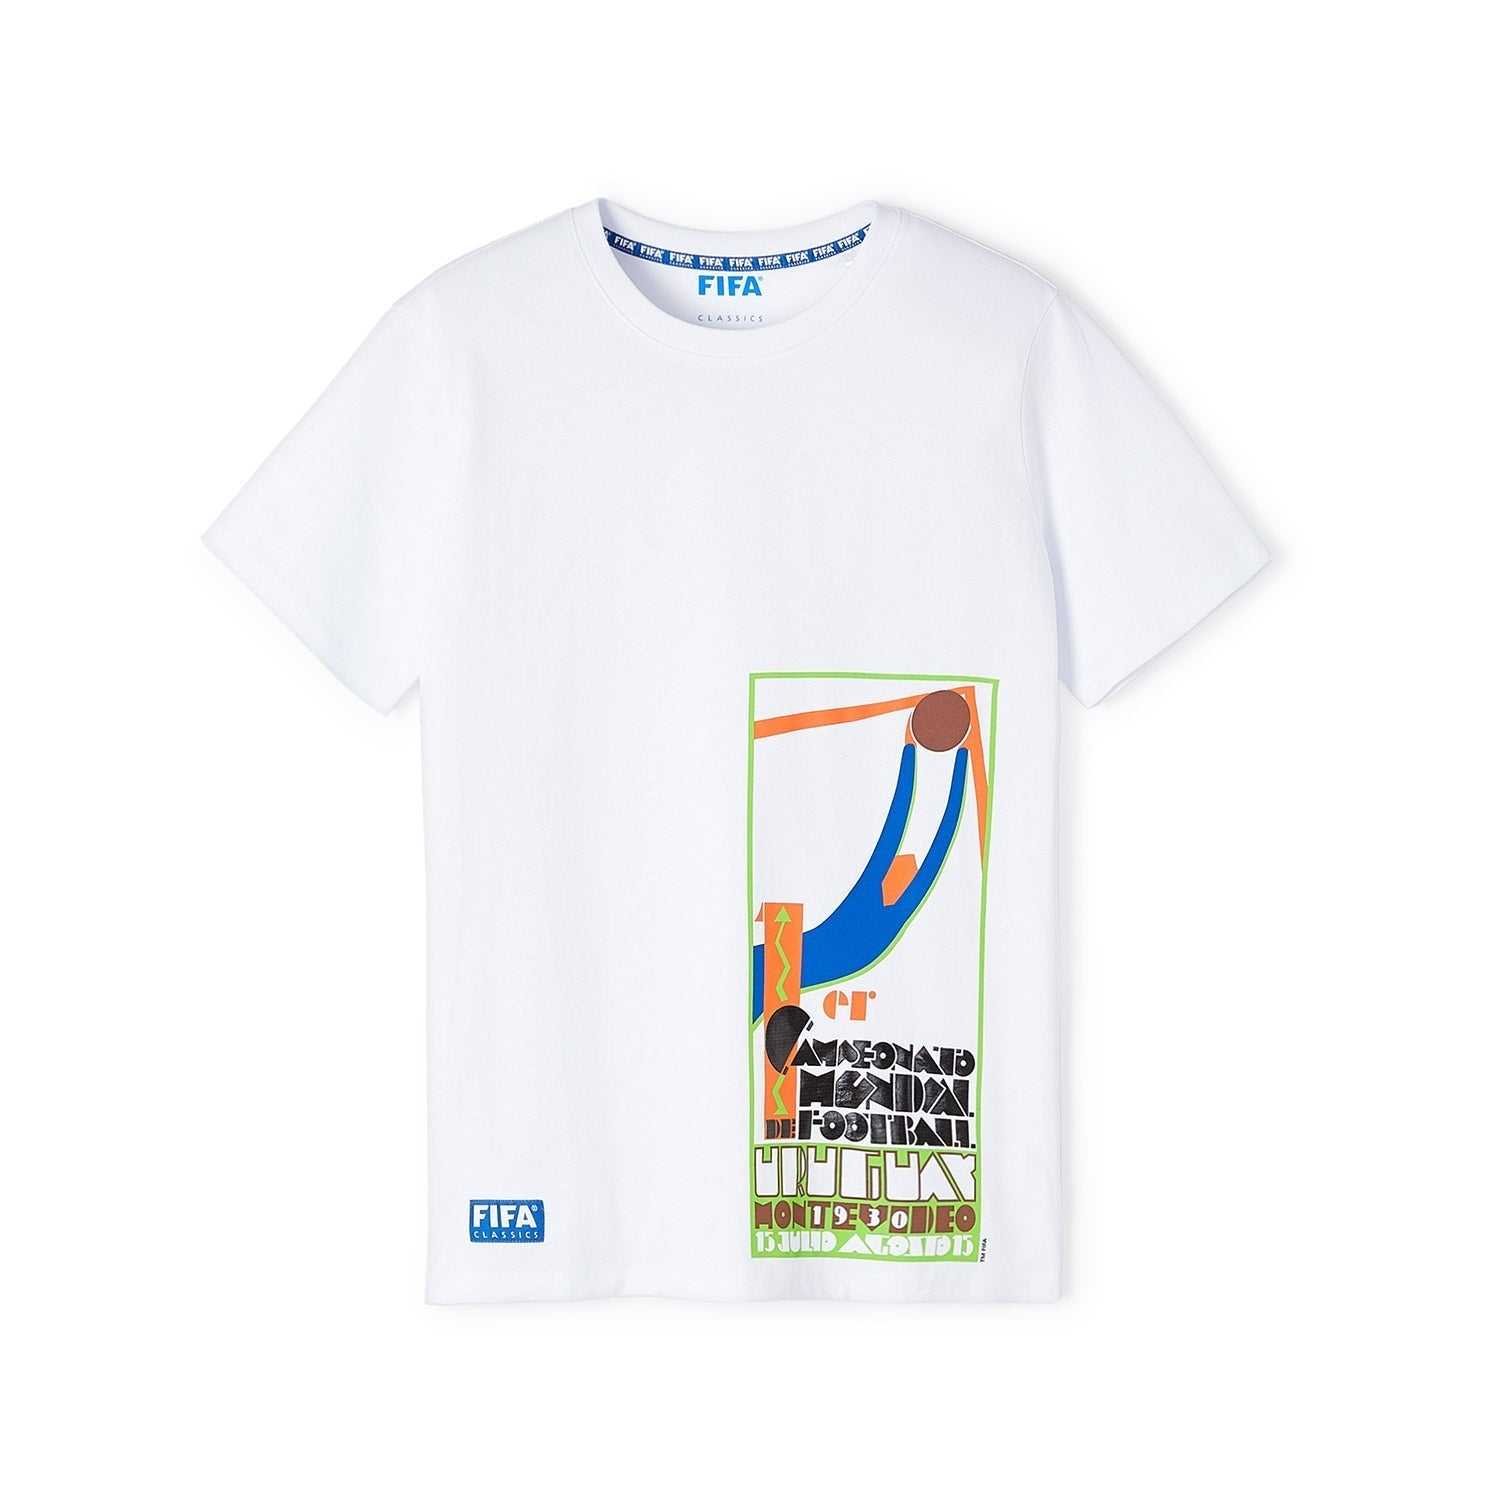 FIFA Classics Uruguay '30 - Offset Poster T-Shirt